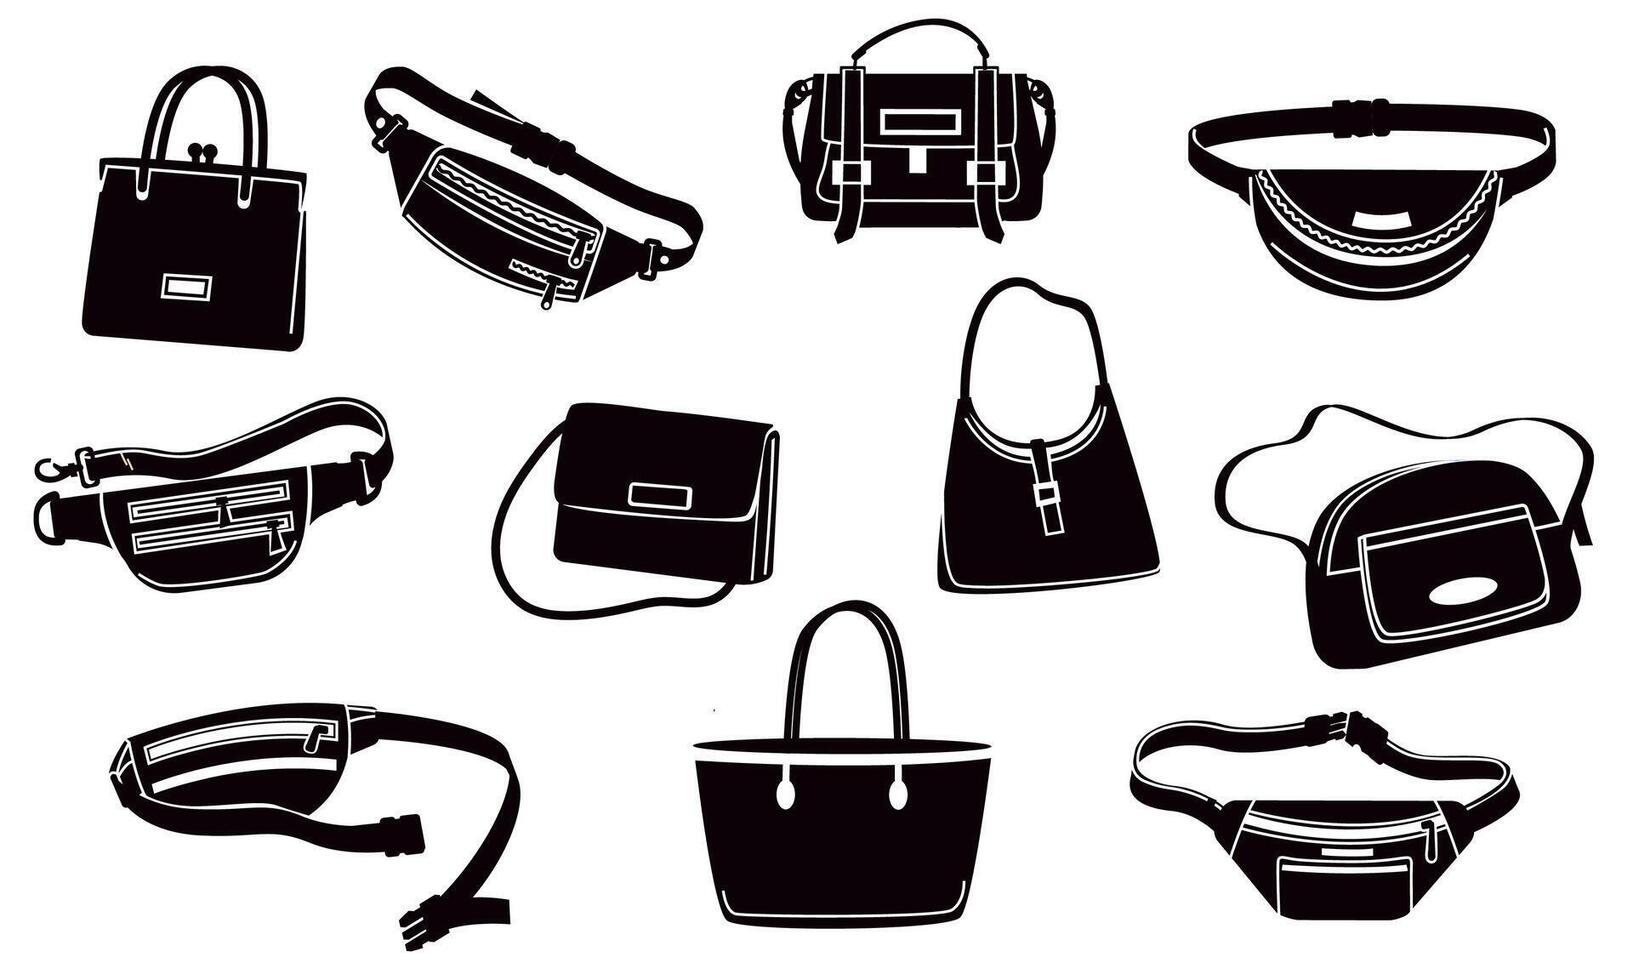 Handtasche Silhouetten. Luxus schwarz Geldbörse und Zubehör, Mode Handtasche einstellen zum Geld, Brieftasche und Telefon. Vektor Mode Tasche Sammlung